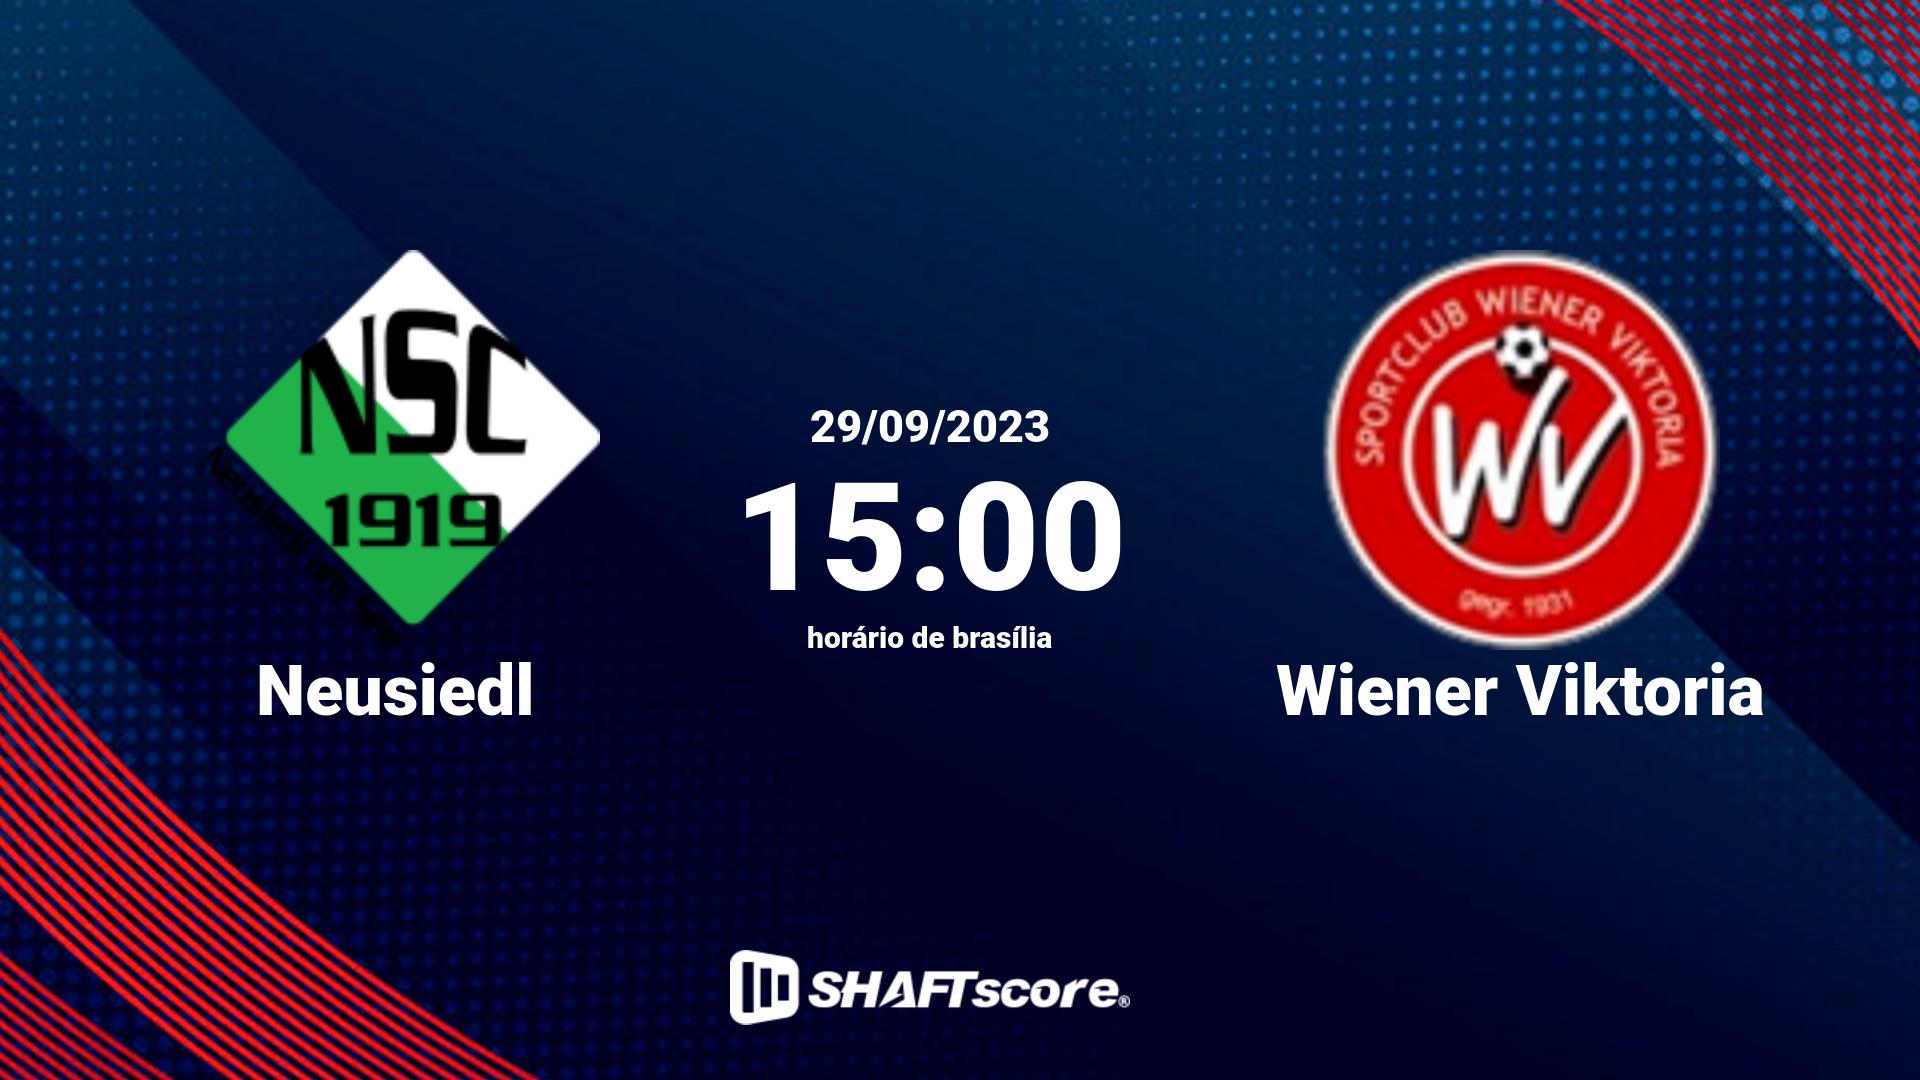 Estatísticas do jogo Neusiedl vs Wiener Viktoria 29.09 15:00